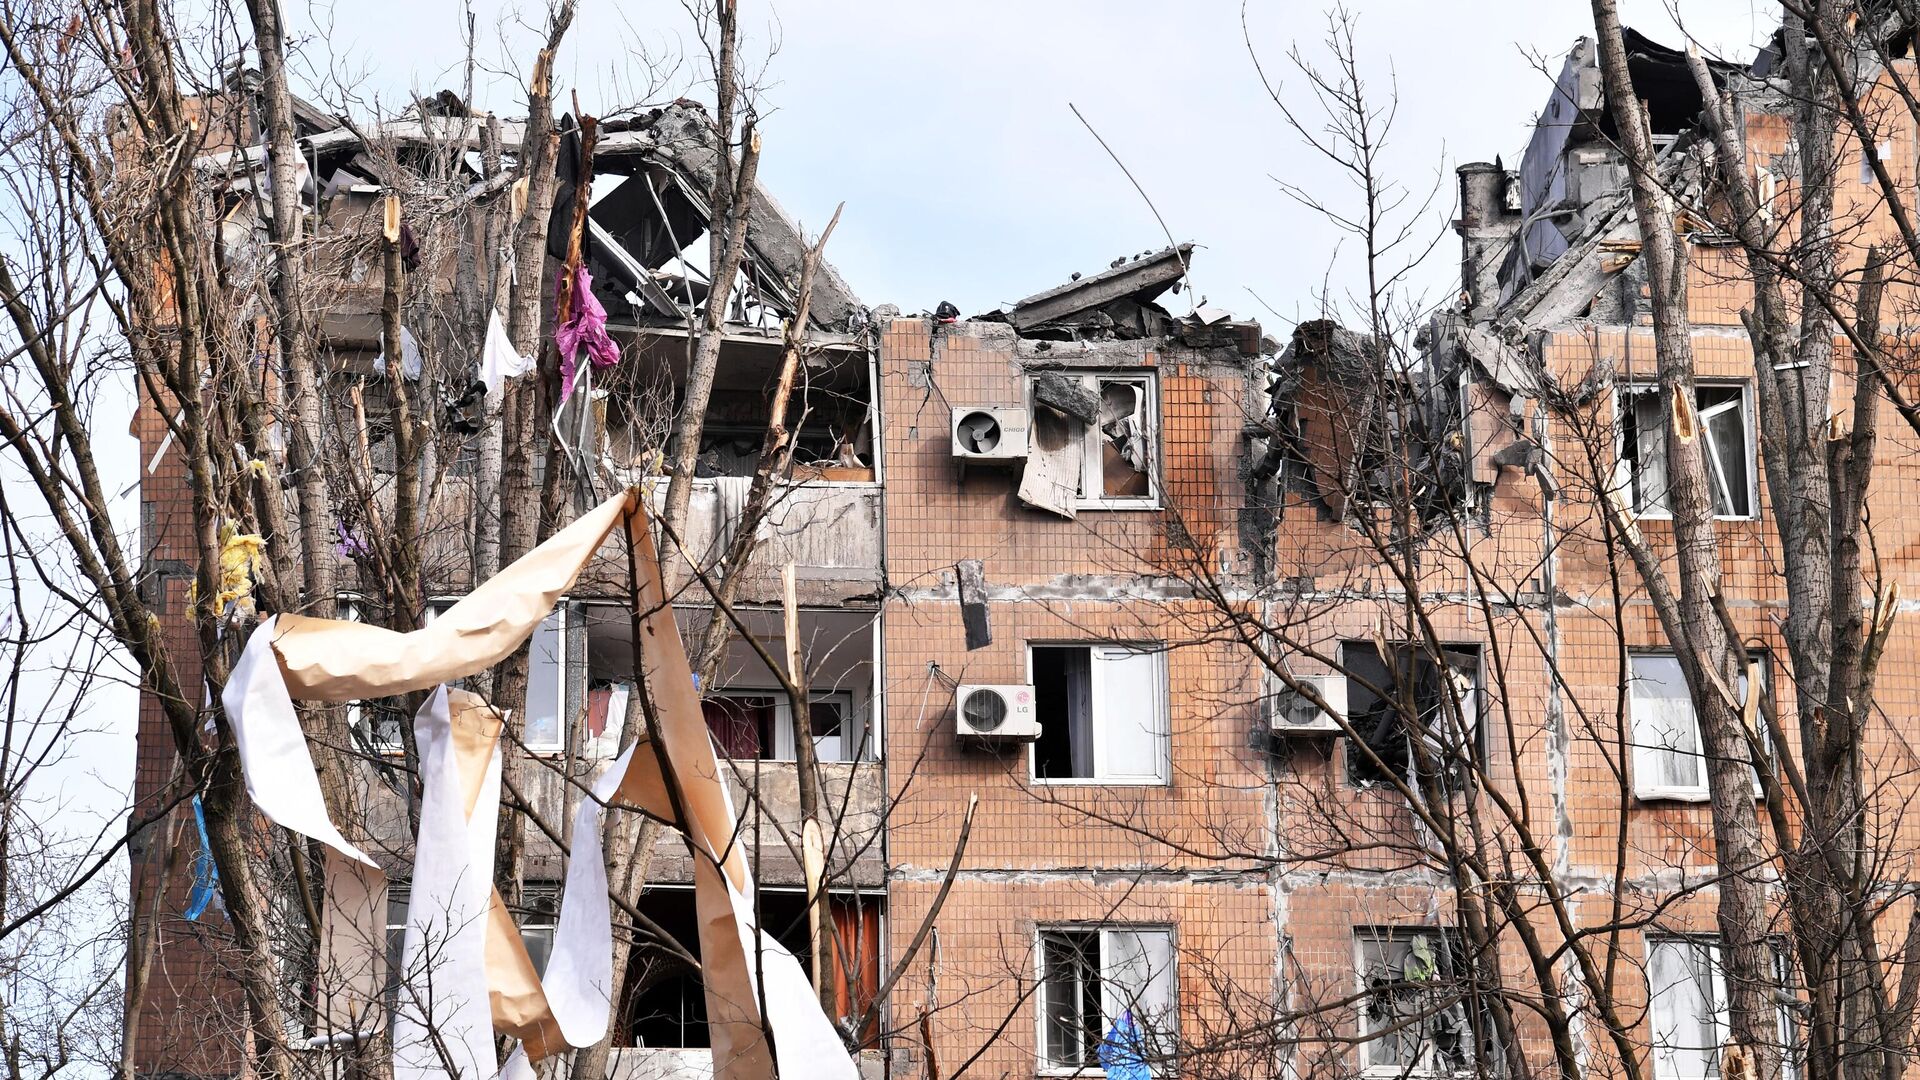 Жилой дом на улице Пинтера в Донецке, пострадавший в результате обрушения крыши после обстрела украинскими войсками - РИА Новости, 1920, 05.04.2022